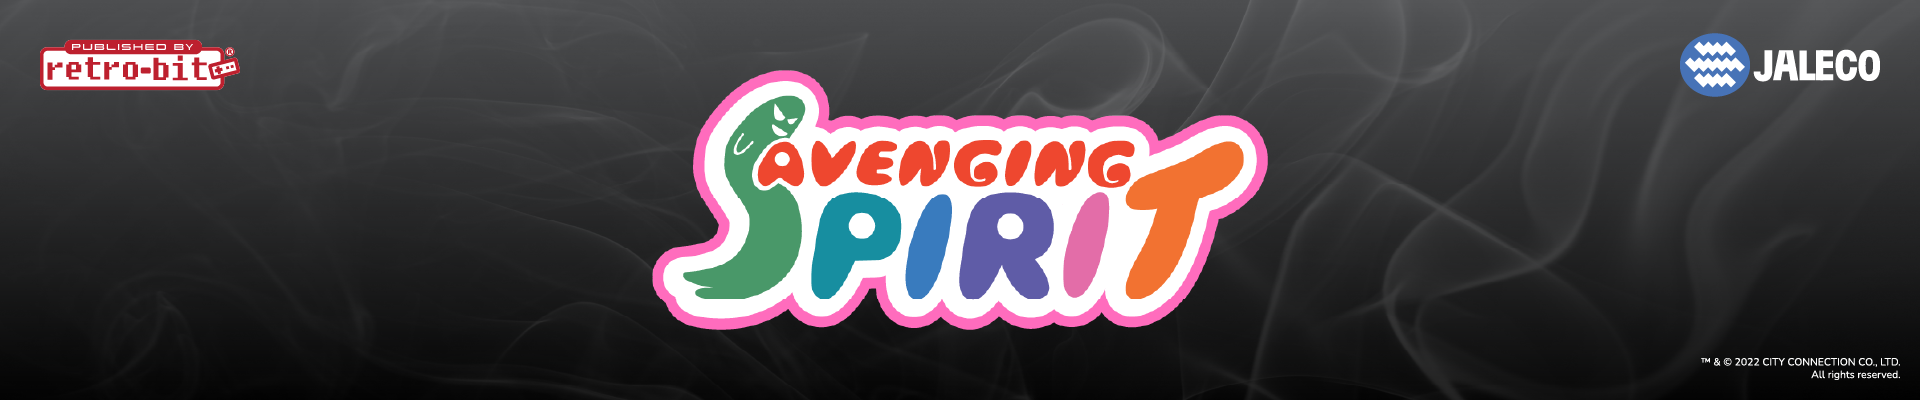 Avenging Spirit - Press Release - Banner